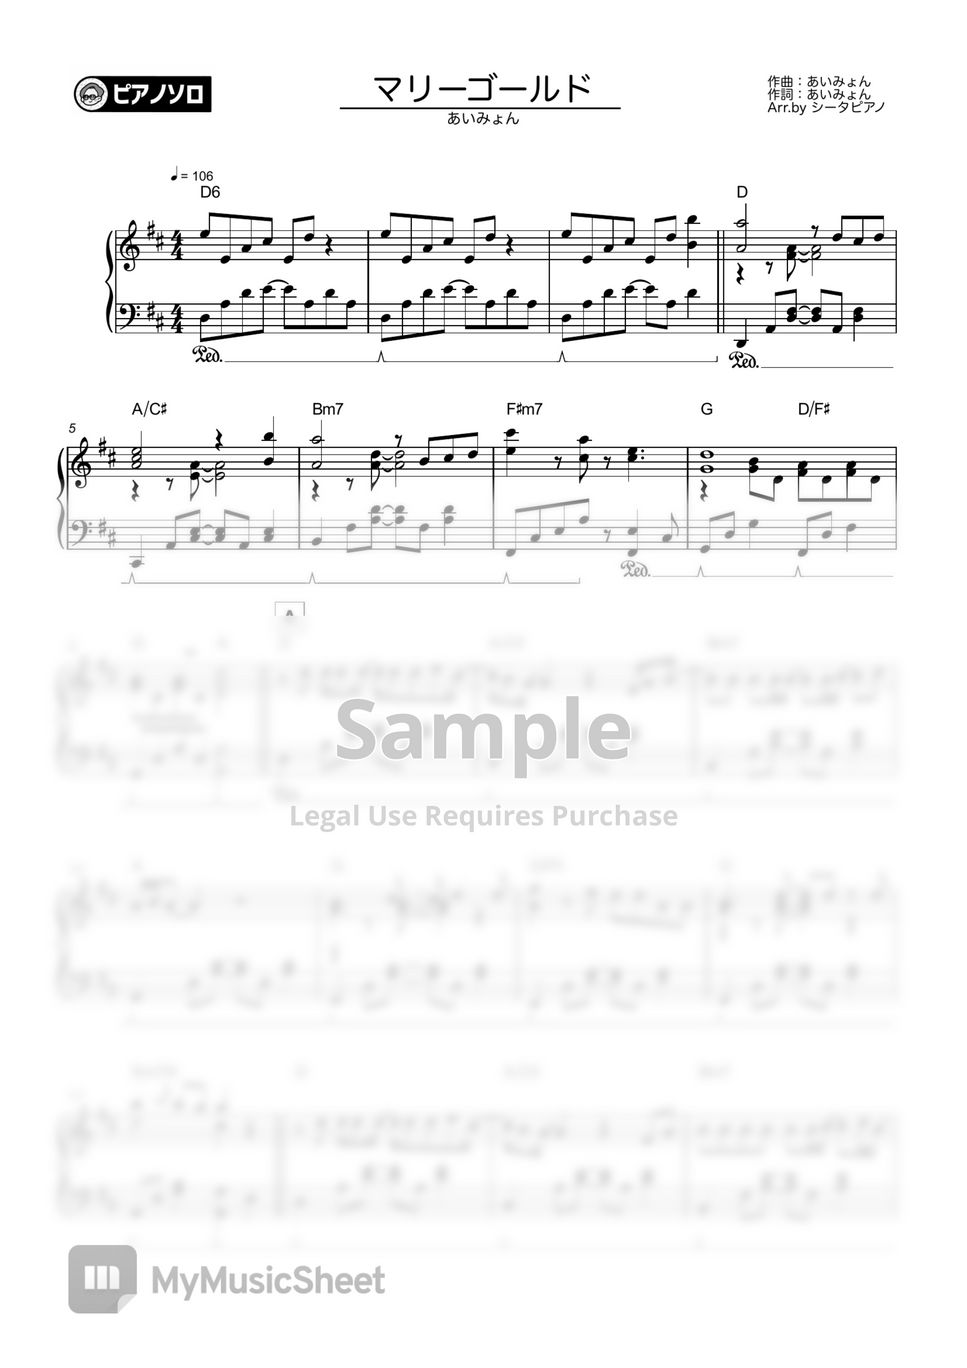 Aimyon - Marigold 악보 by THETA PIANO